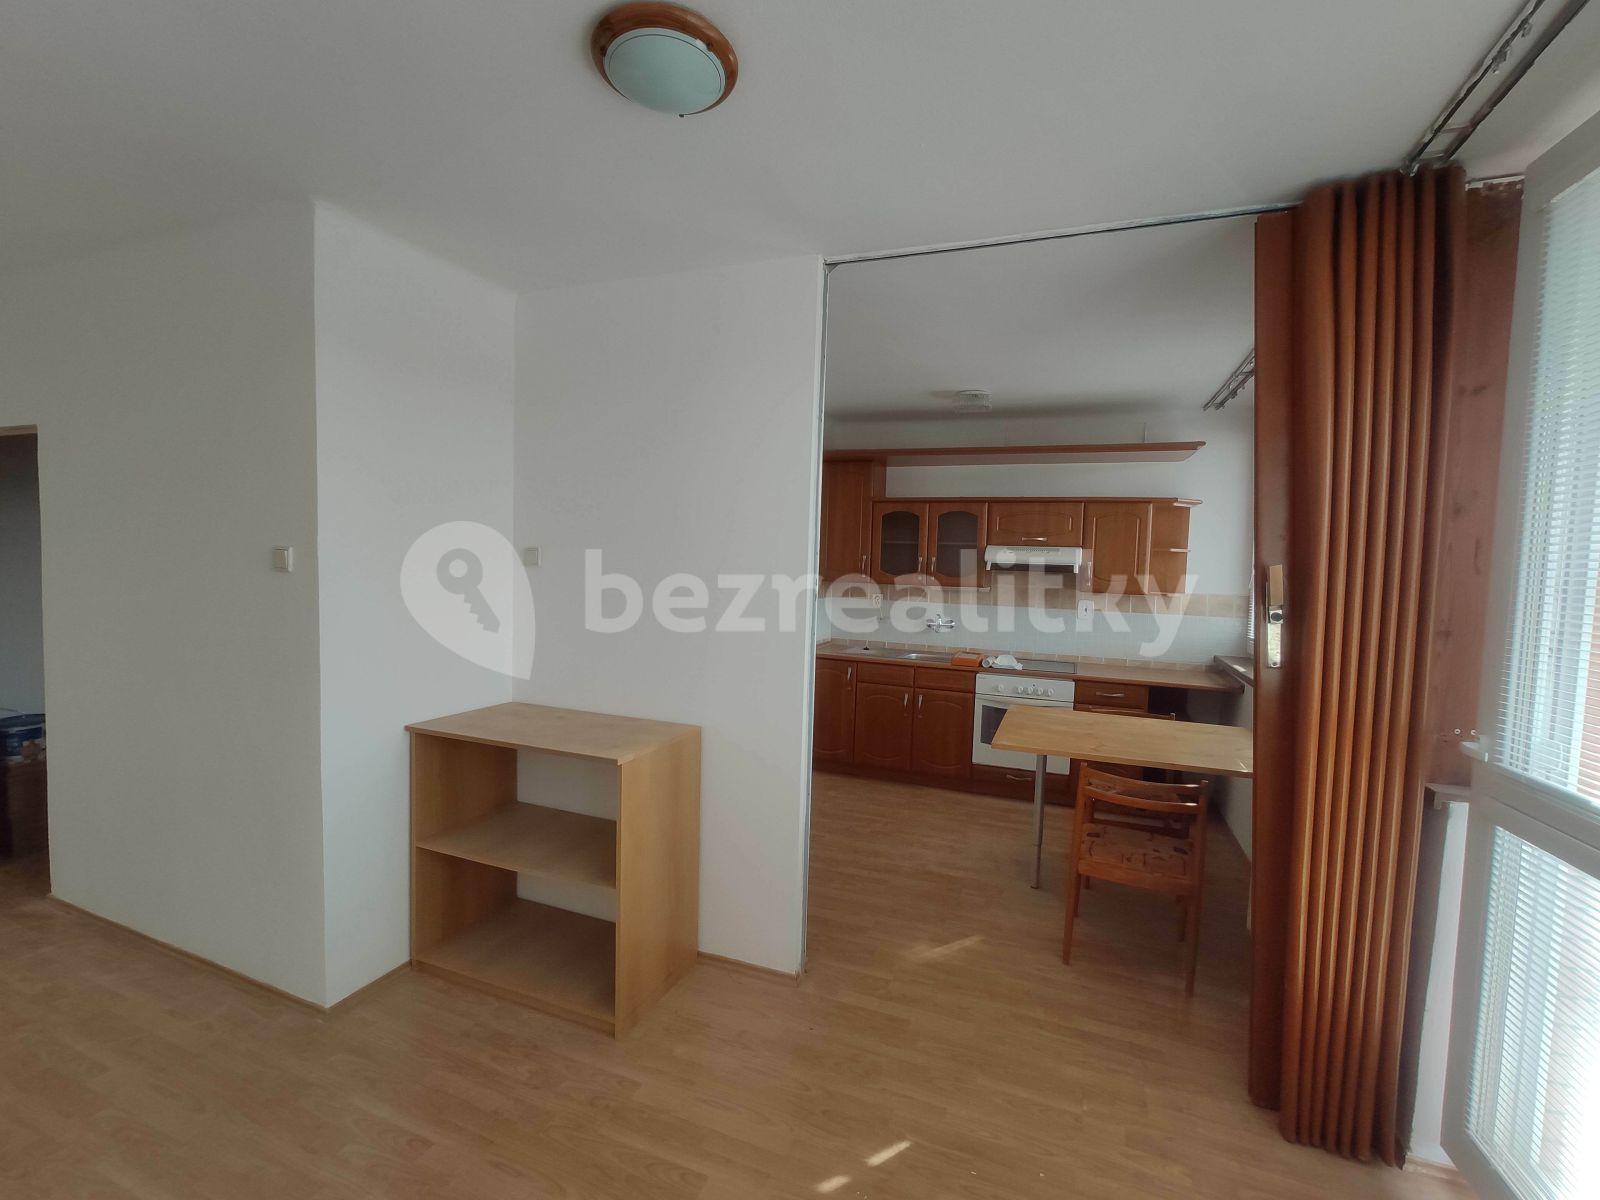 1 bedroom flat to rent, 45 m², Mošnova, Prague, Prague